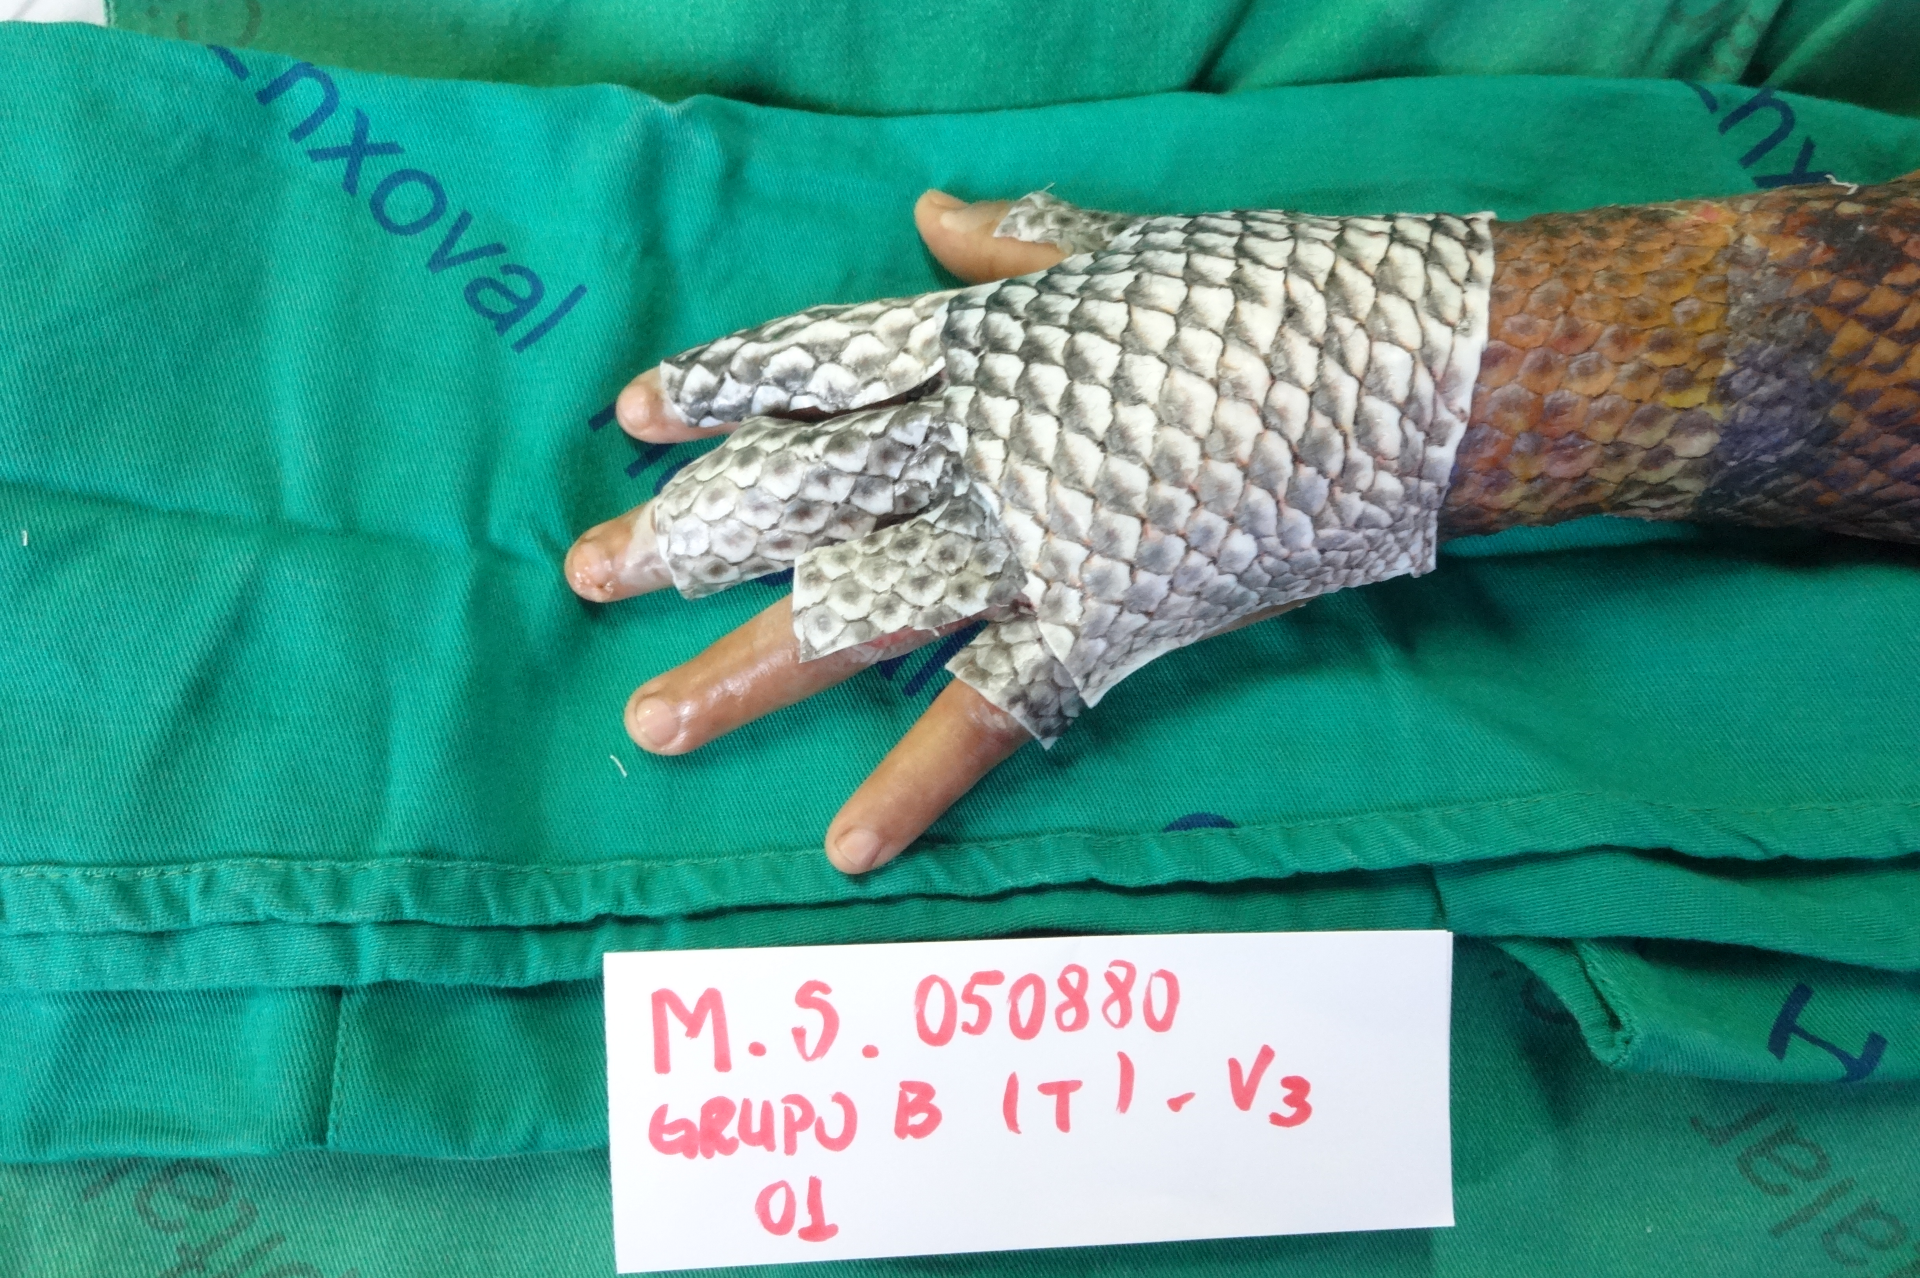 Foto de uma mão coberta com pele de tilápia